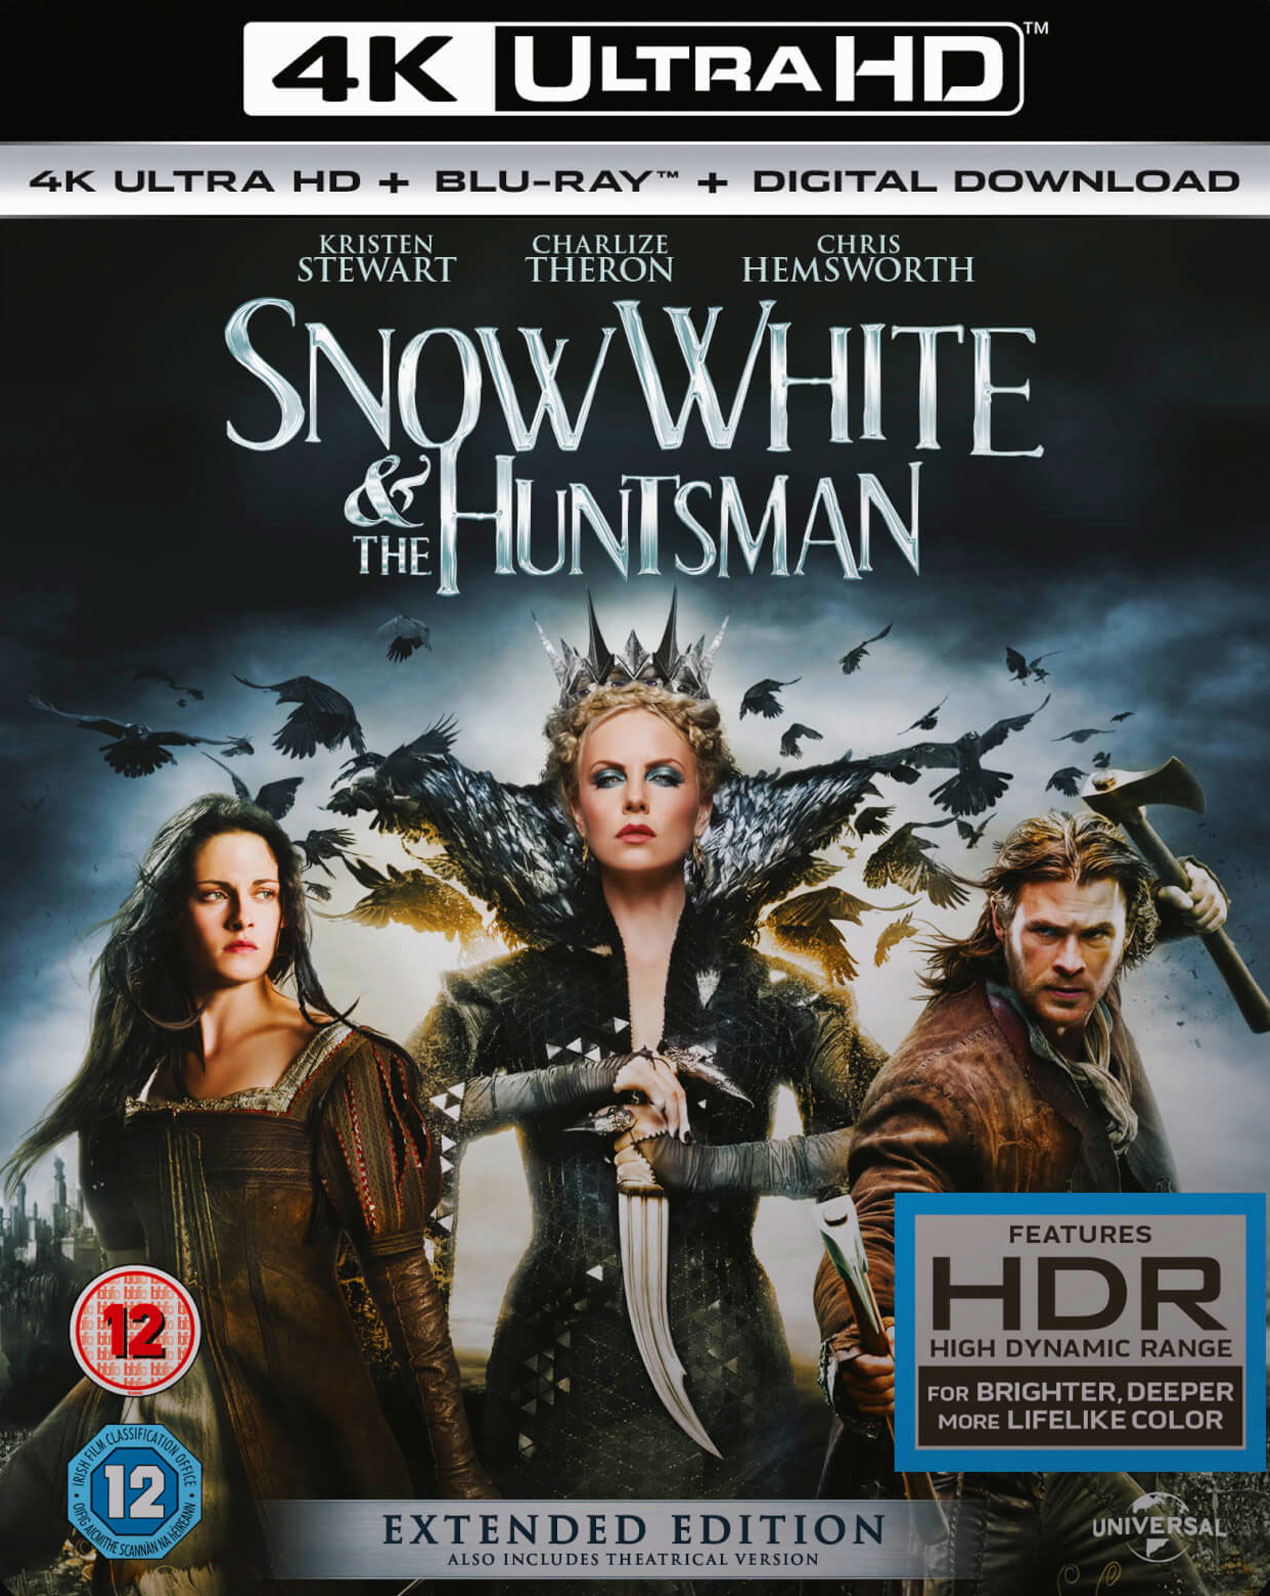 ดูหนังออนไลน์ฟรี Snow White and the Huntsman สโนว์ไวท์ & พรานป่า ในศึกมหัศจรรย์